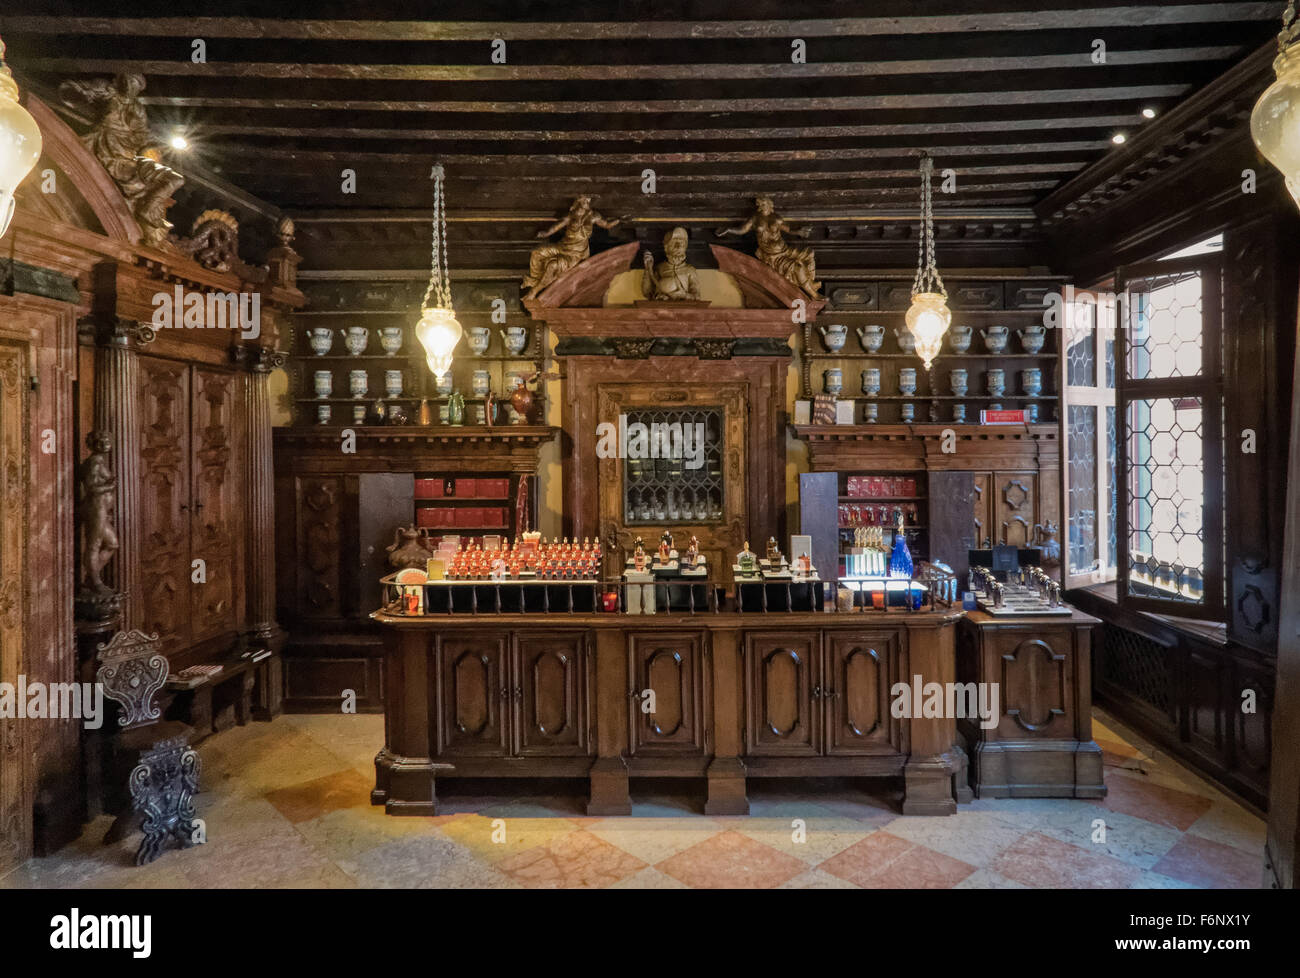 Pharmacie plus ancienne à Venise sur la Strada Nuova. L'Apothicairerie chambre est décorée avec des vases majolique et mobilier en noyer sculpté Banque D'Images